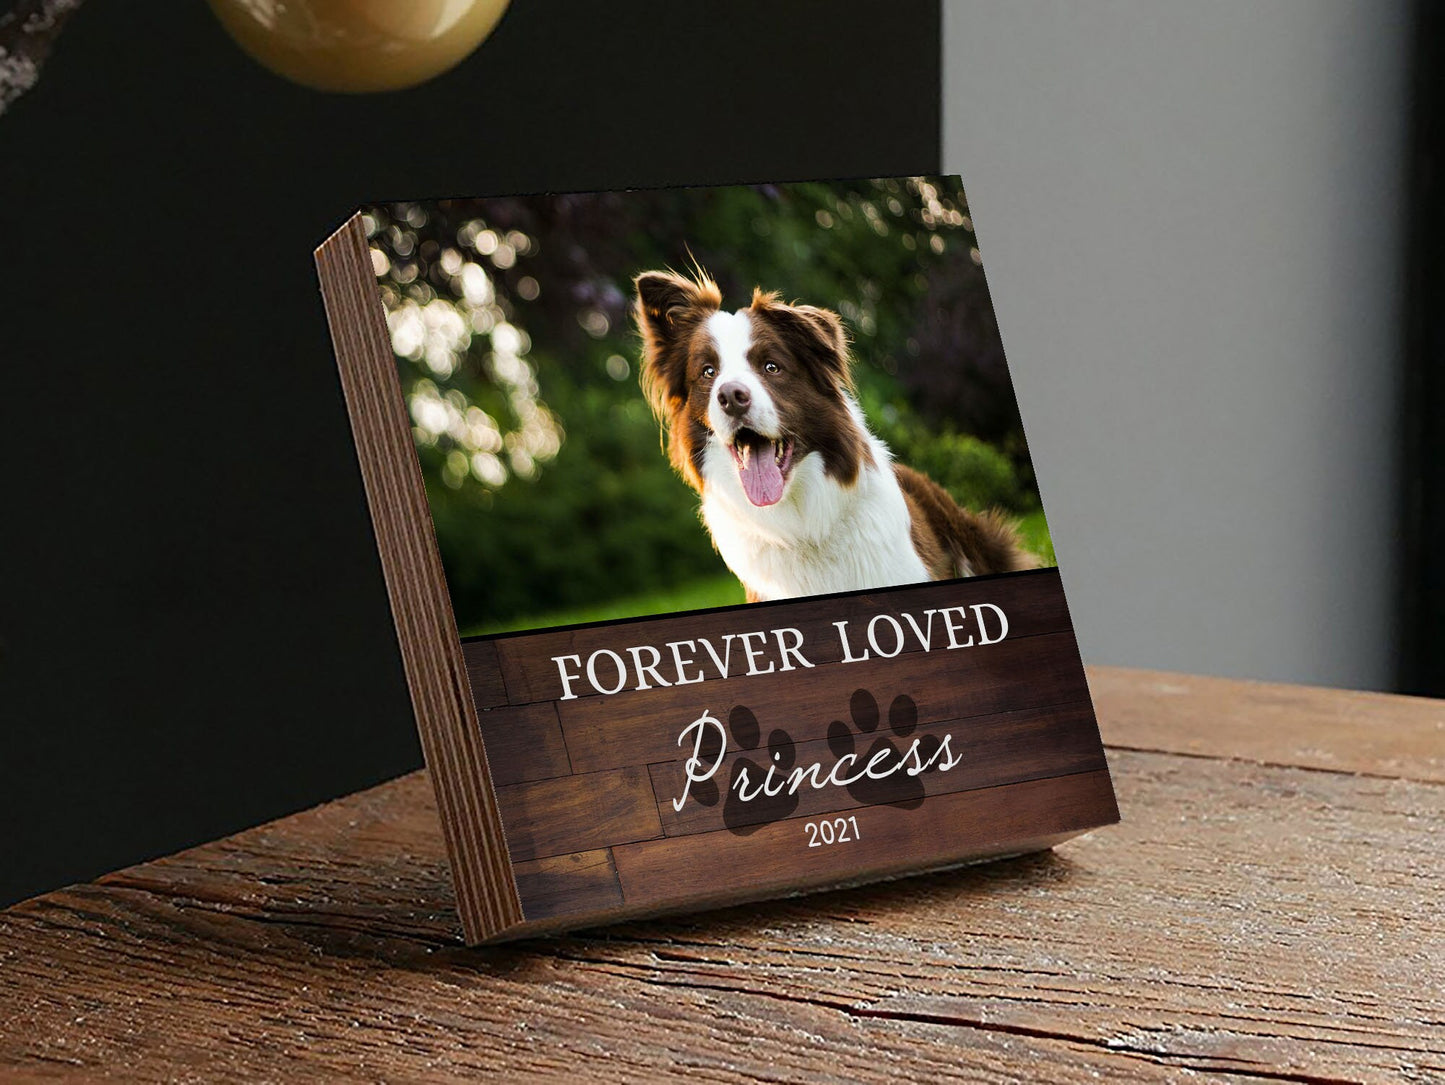 Personalized Pet Memorial Printed 4" or 6" - Wood Photo Block - Dog Loss Gift - Dog Memorial Frame - Pet Loss - Pet Memorial - Forever Loved